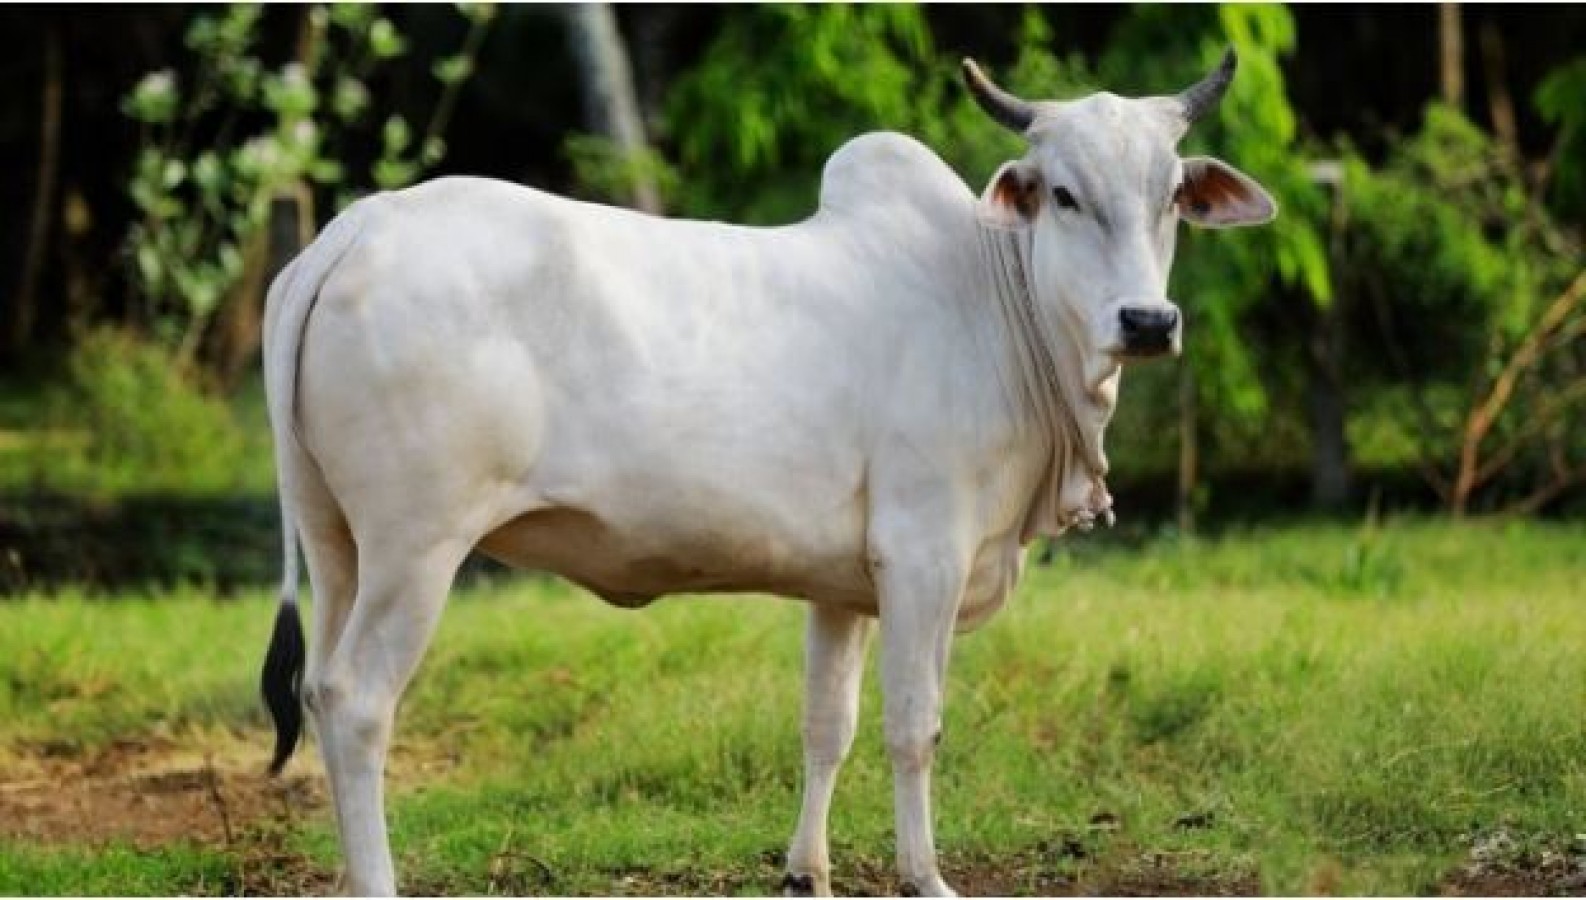 ज्योतिष शास्त्र के अनुसार, पितृ पक्ष में पंचबली का खास महत्व है। इसके लिए सबसे पहला भोजन गाय के लिए निकाला जाता है। जिसे गो बली के नाम से भी जाना जाता है।